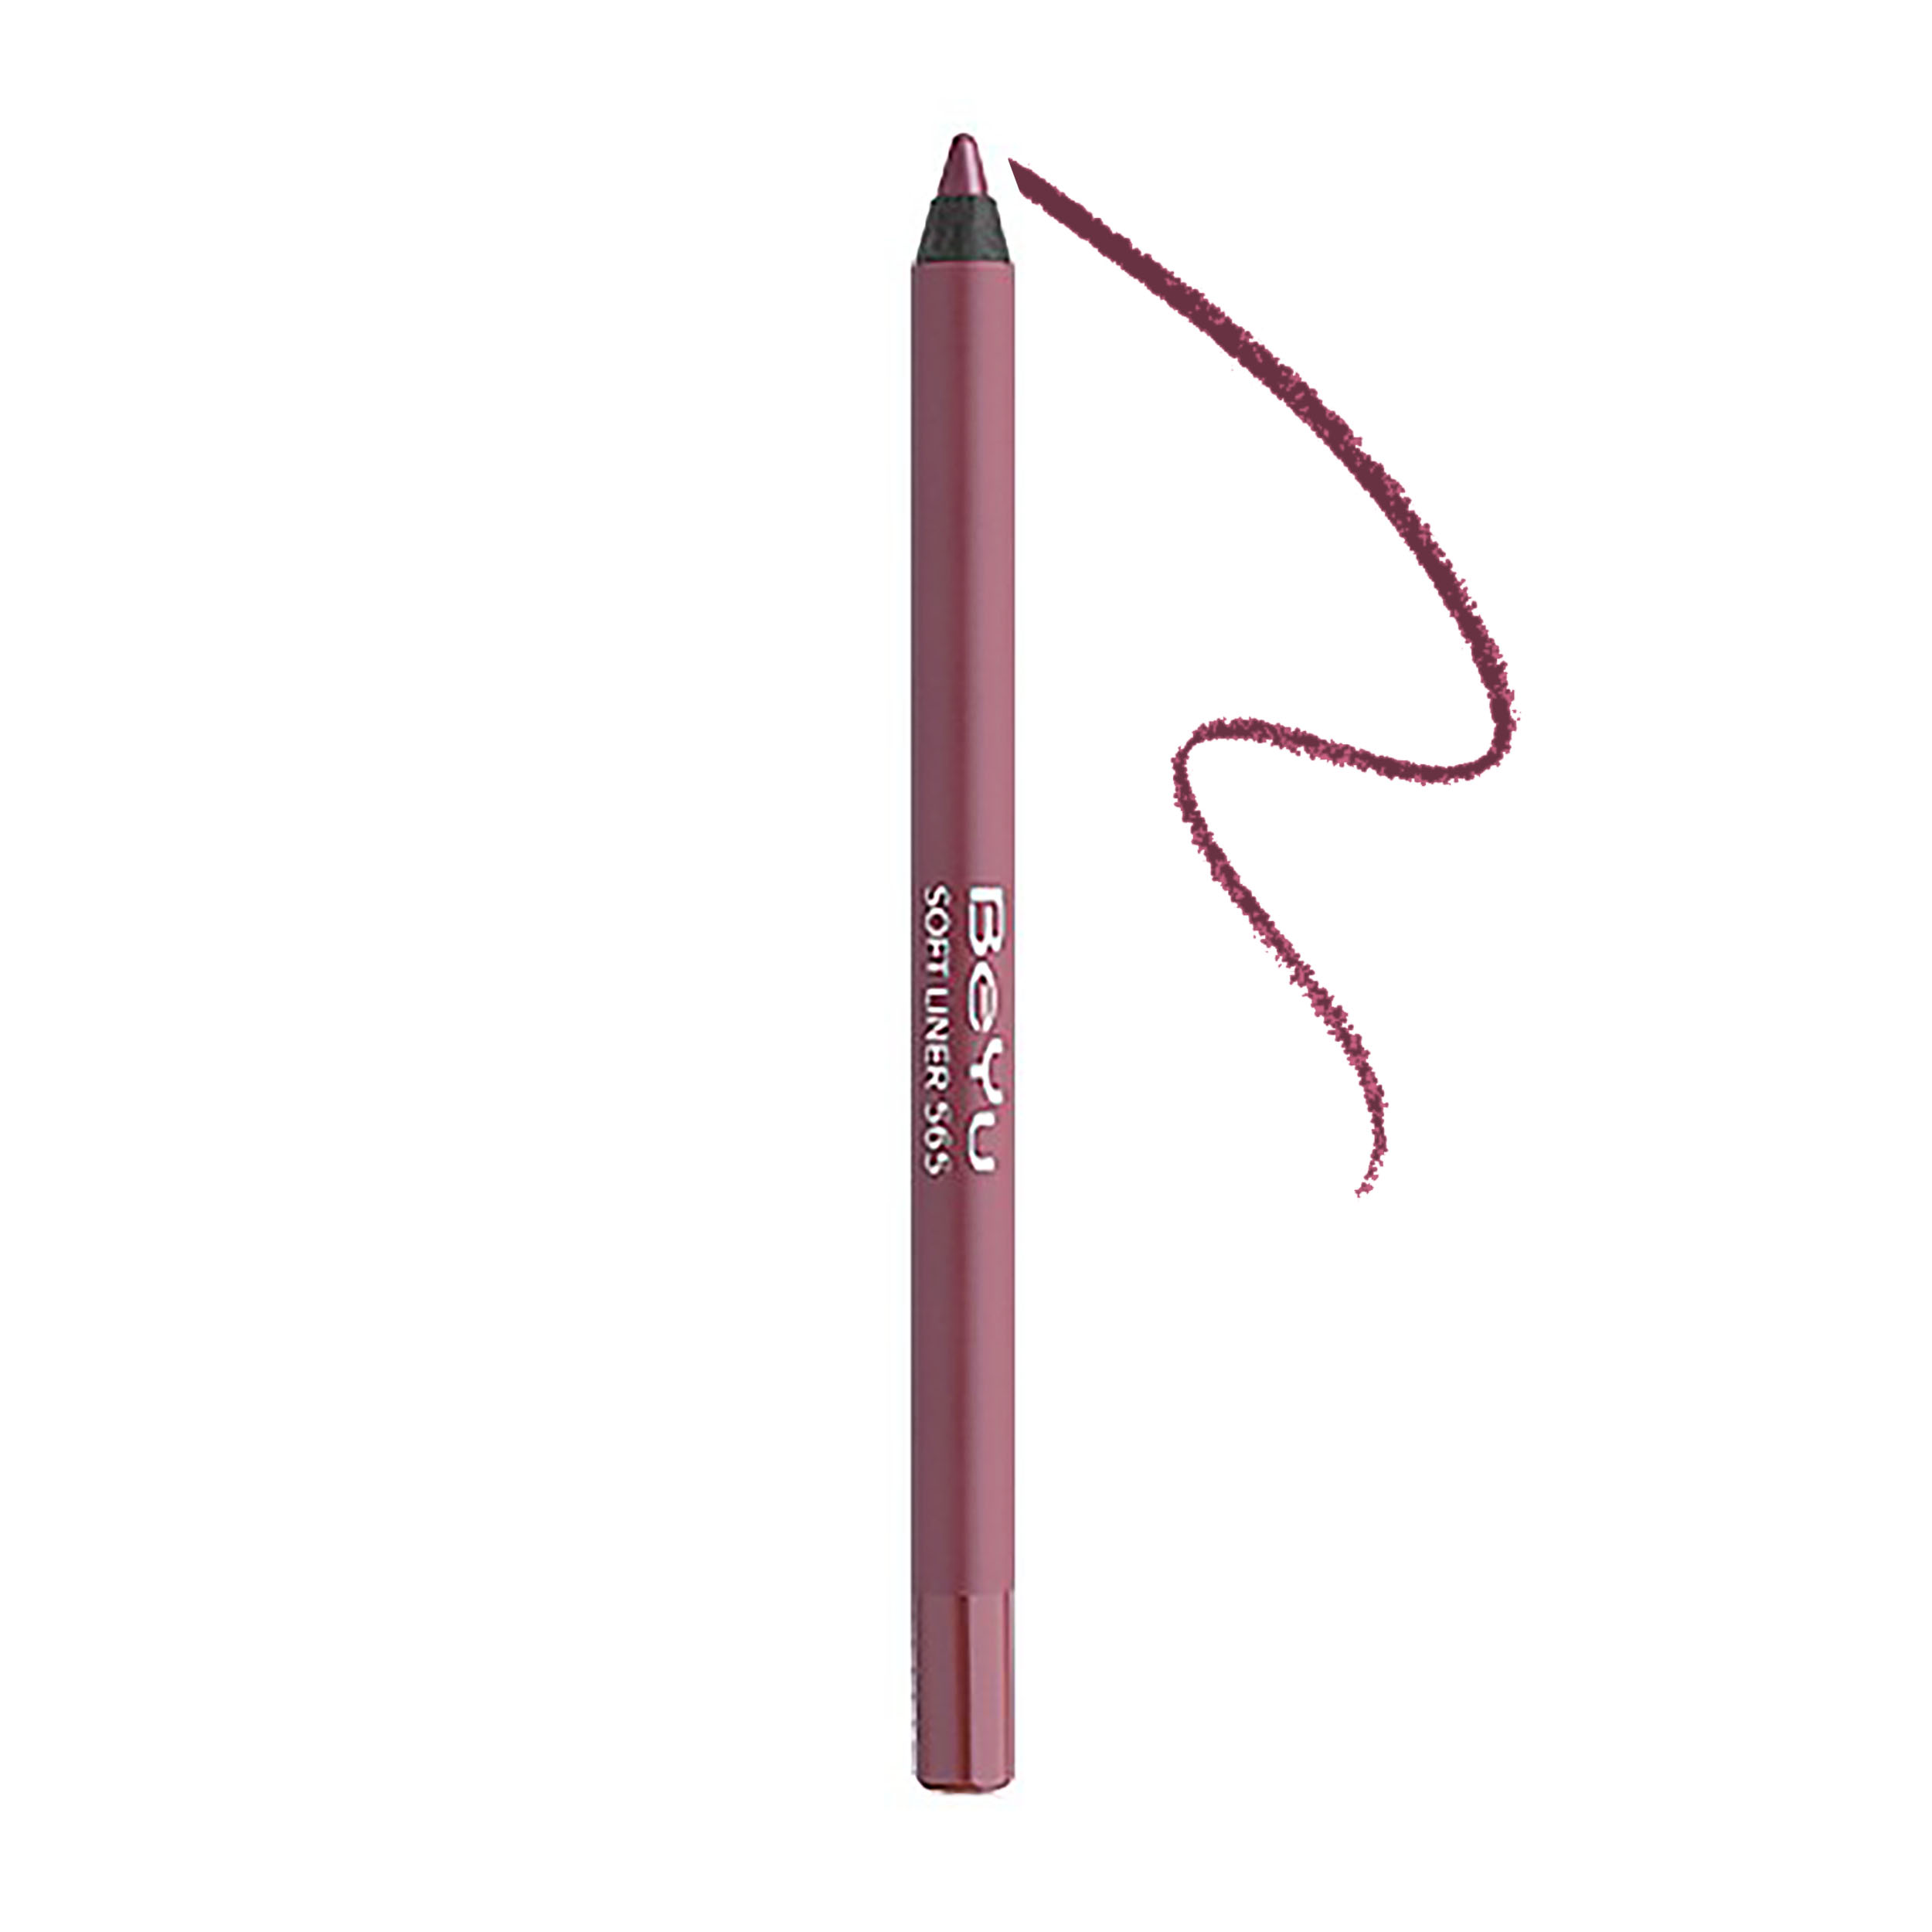 مداد لب بی یو مدل Soft Lip Liner 565 -  - 1